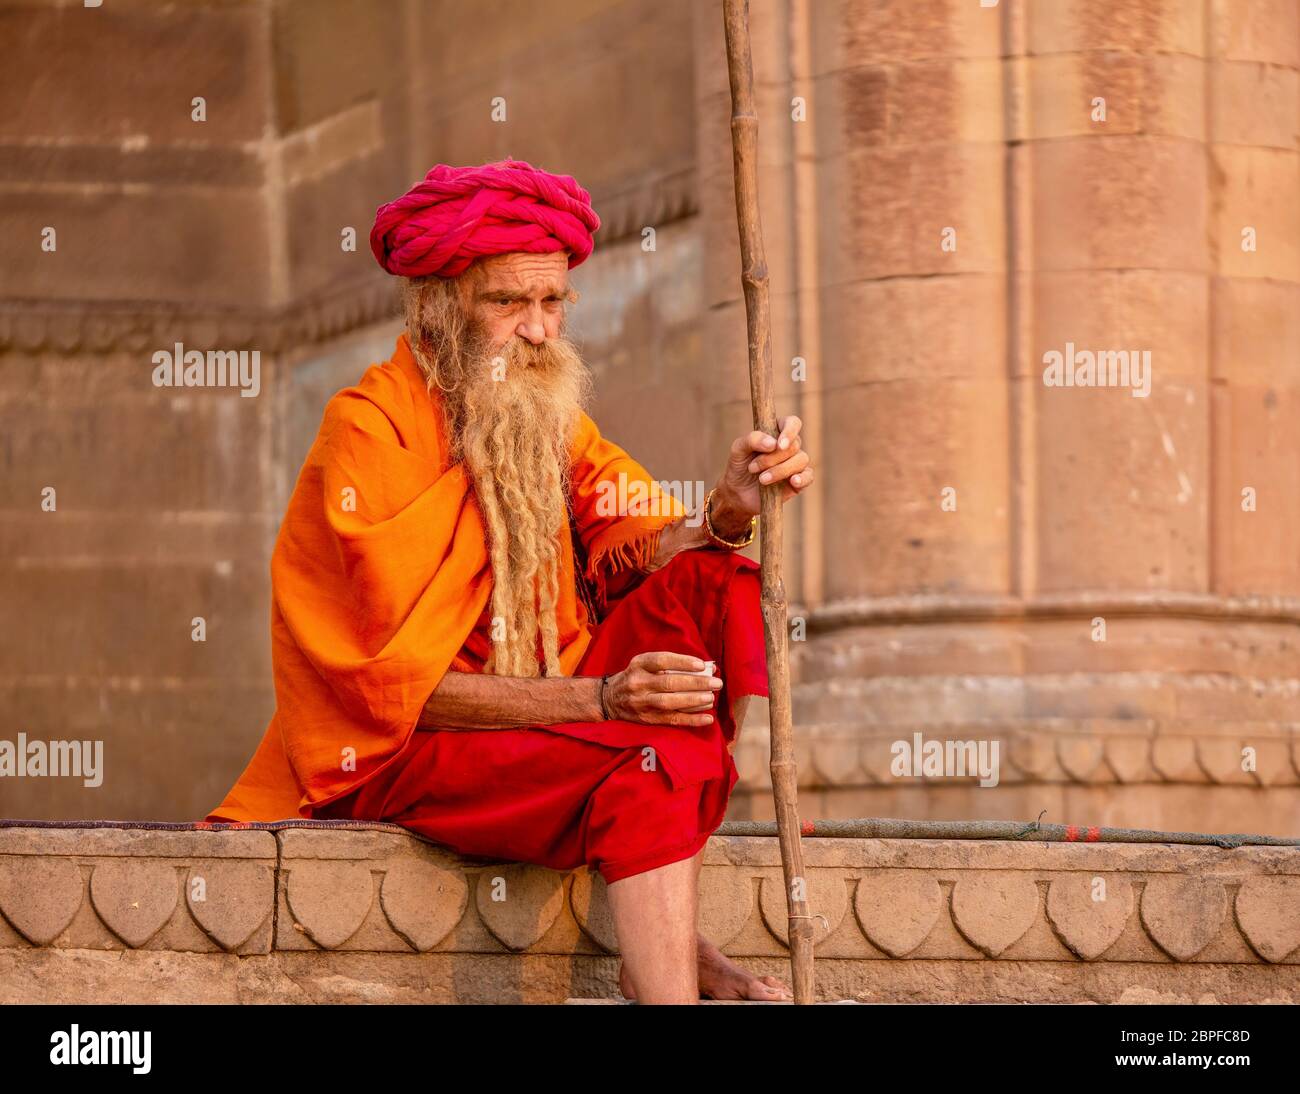 Varanasi, Indien - 13. November 2015. Ein kaukasischer Mann, der die bunte traditionelle Kleidung und den langen Bart eines Hindu-Sadhu trägt, sitzt auf den Ghats. Stockfoto